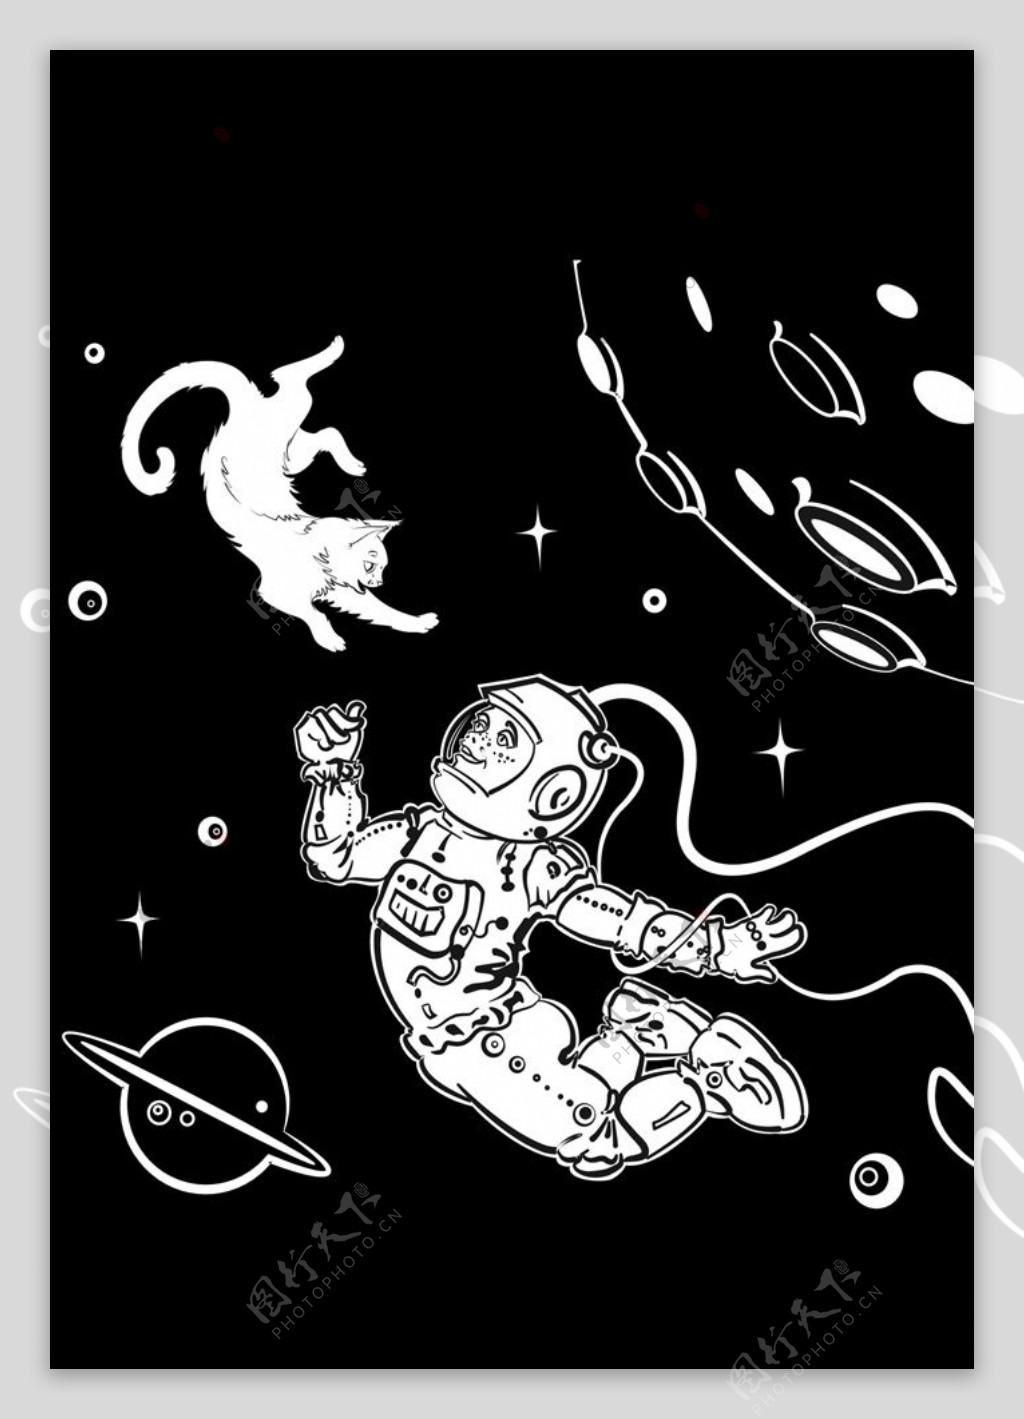 外太空宇航员小猫矢量图下载